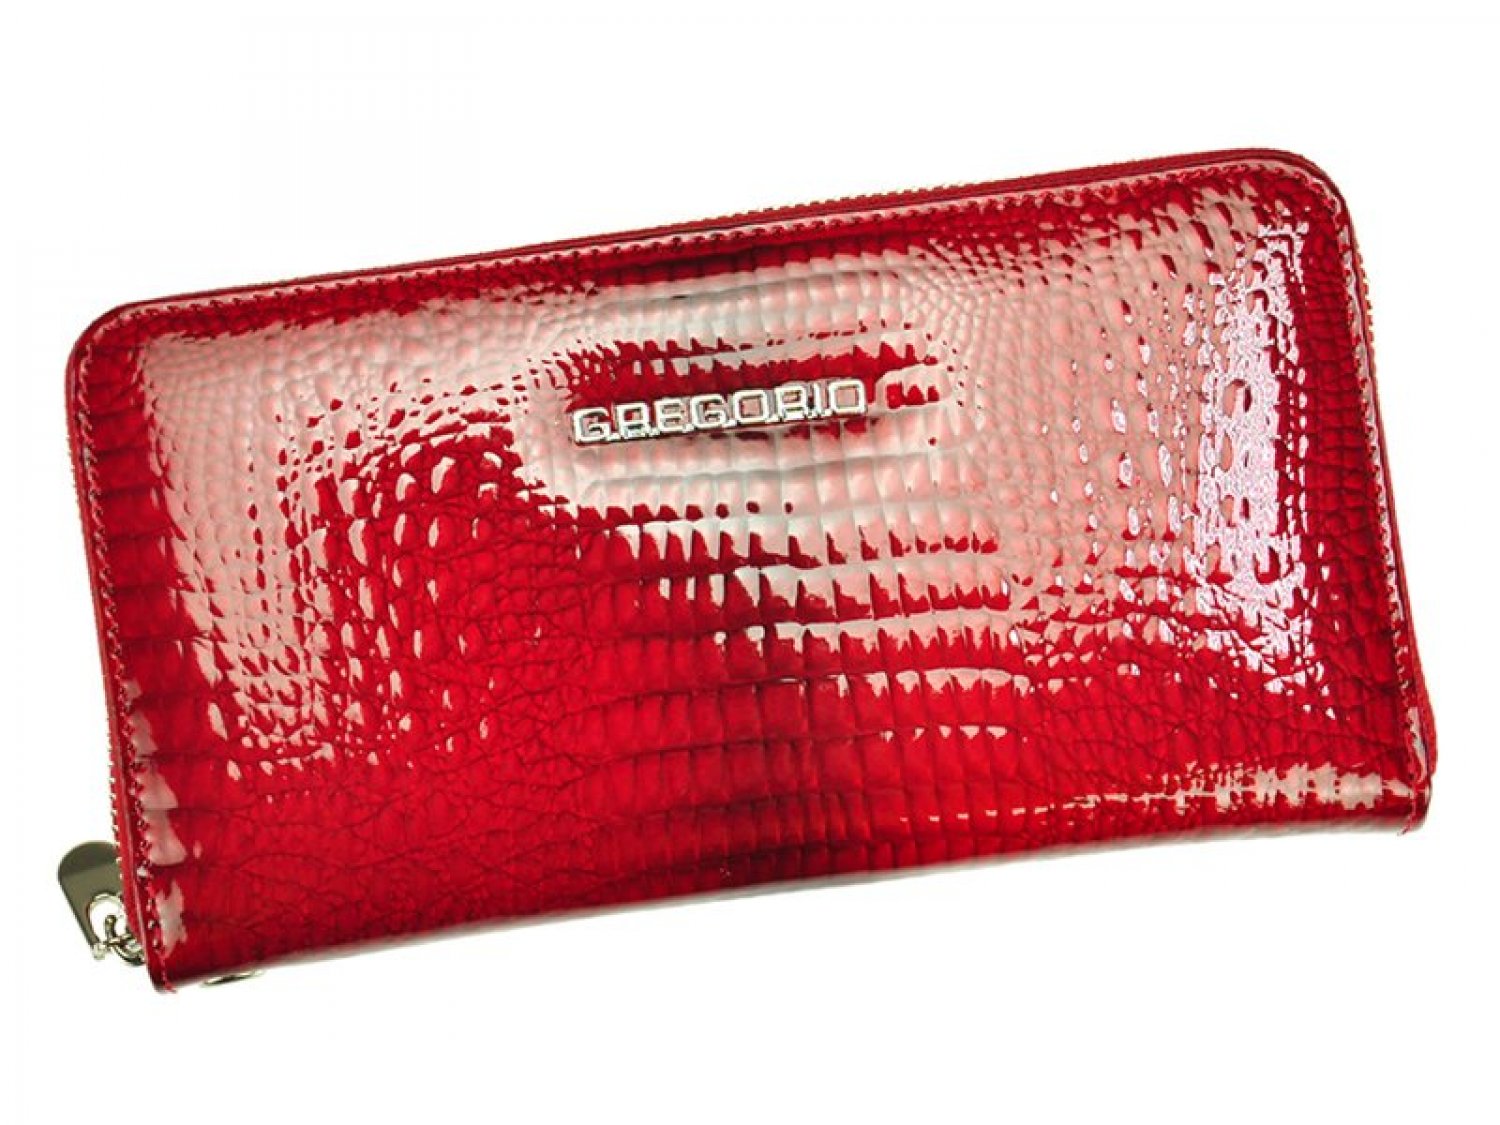 Elegantní dámská kožená peněženka s hadím vzorem Laurenn, červená